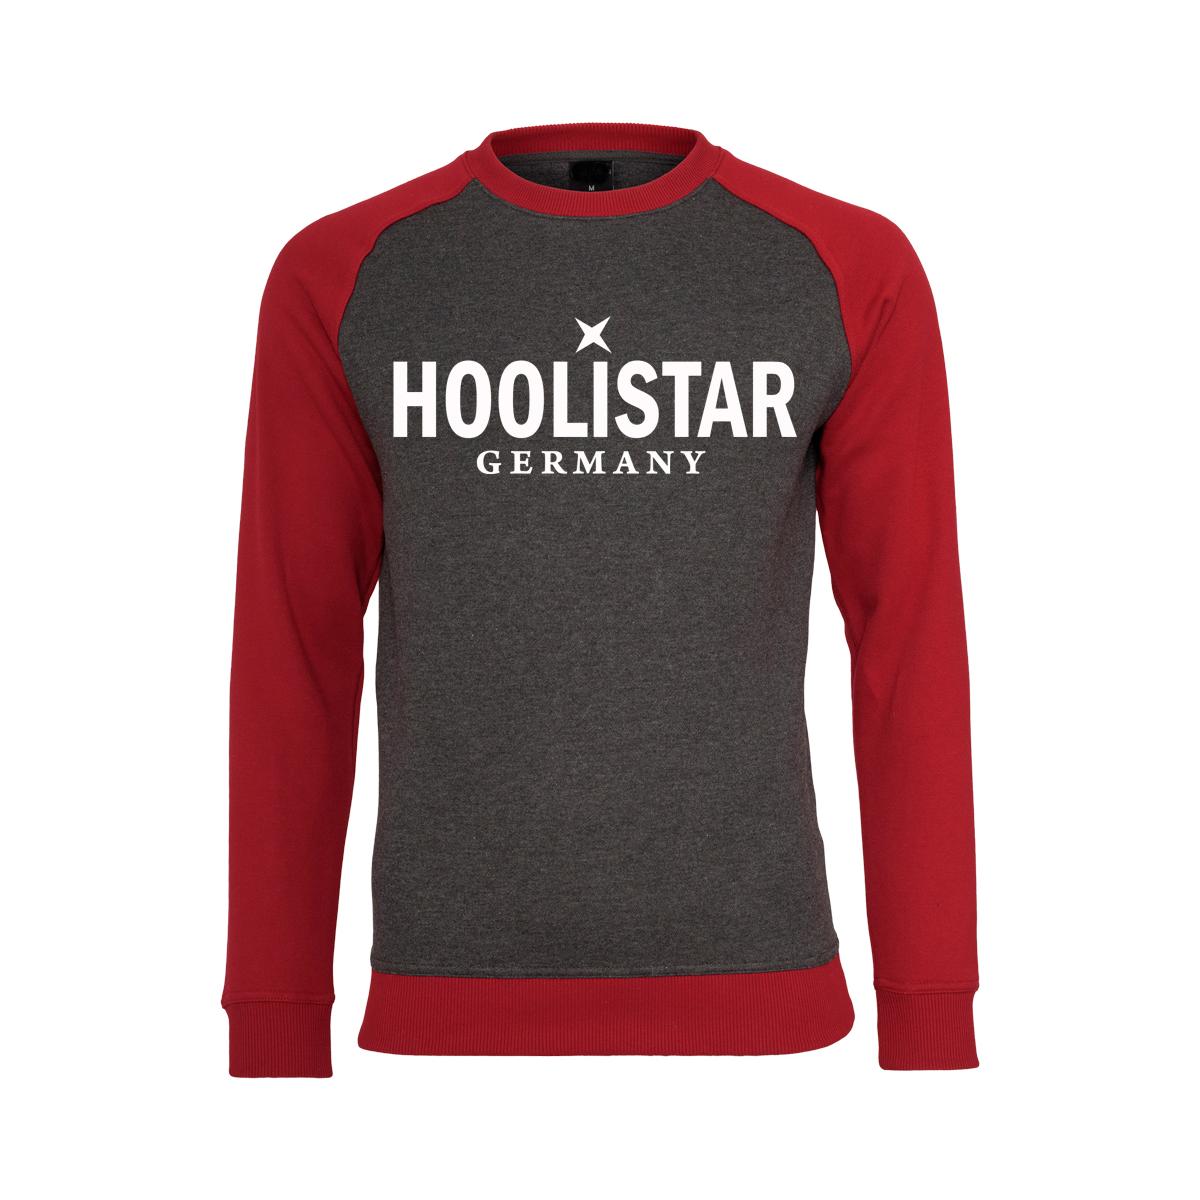 X Hoolistar - Männer Pullover - grau-rot